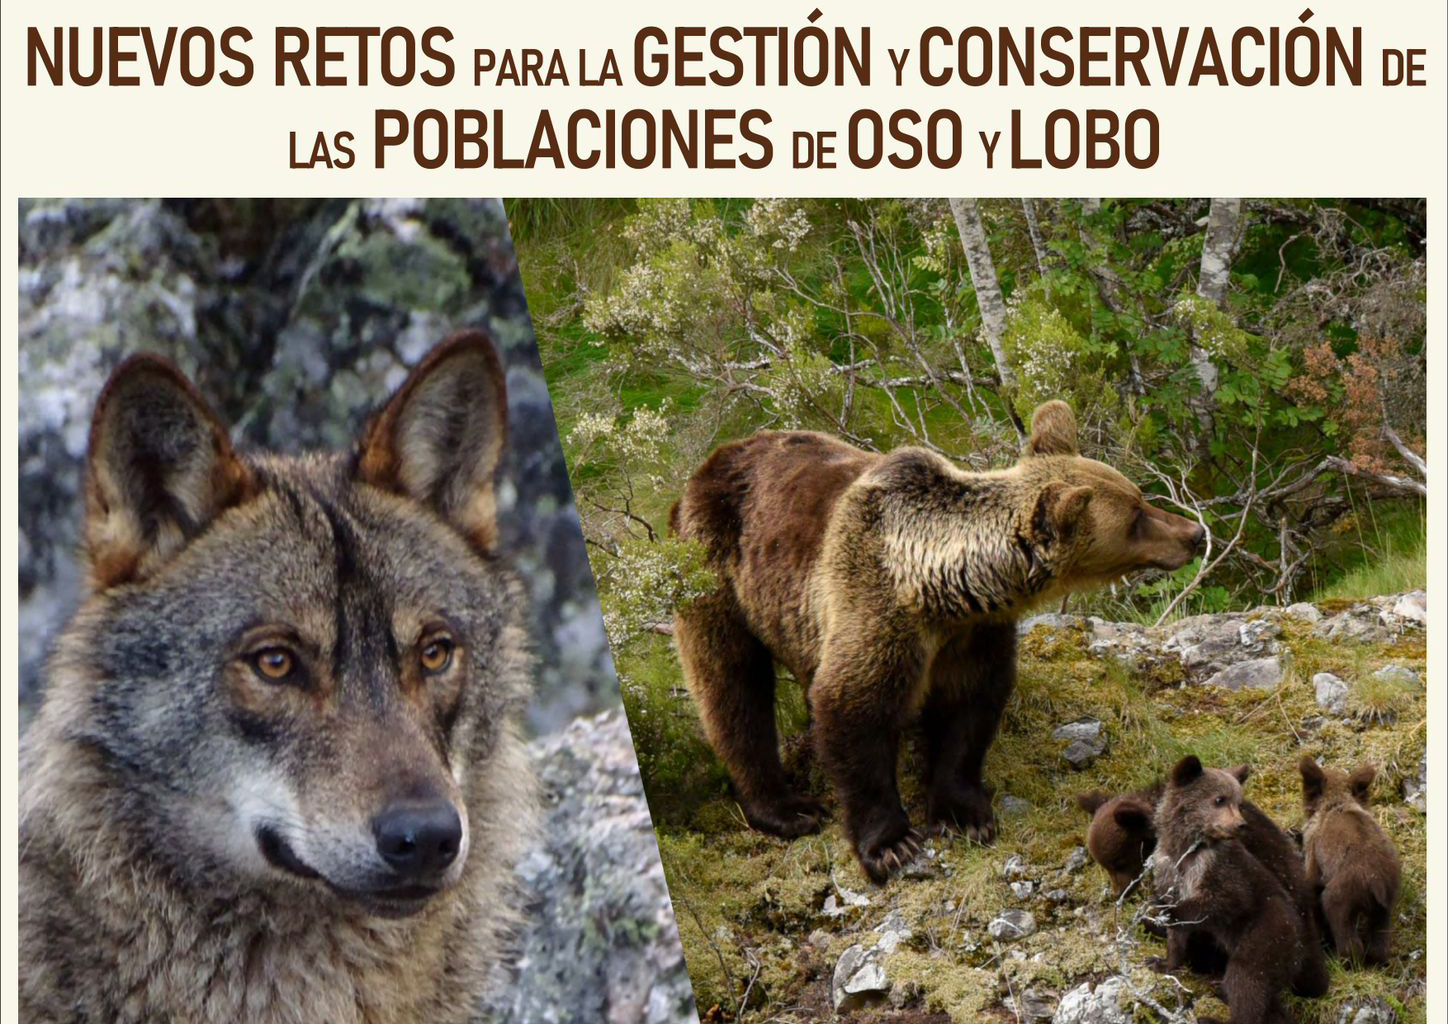 gestion y conservacion oso y lobo zamora baner